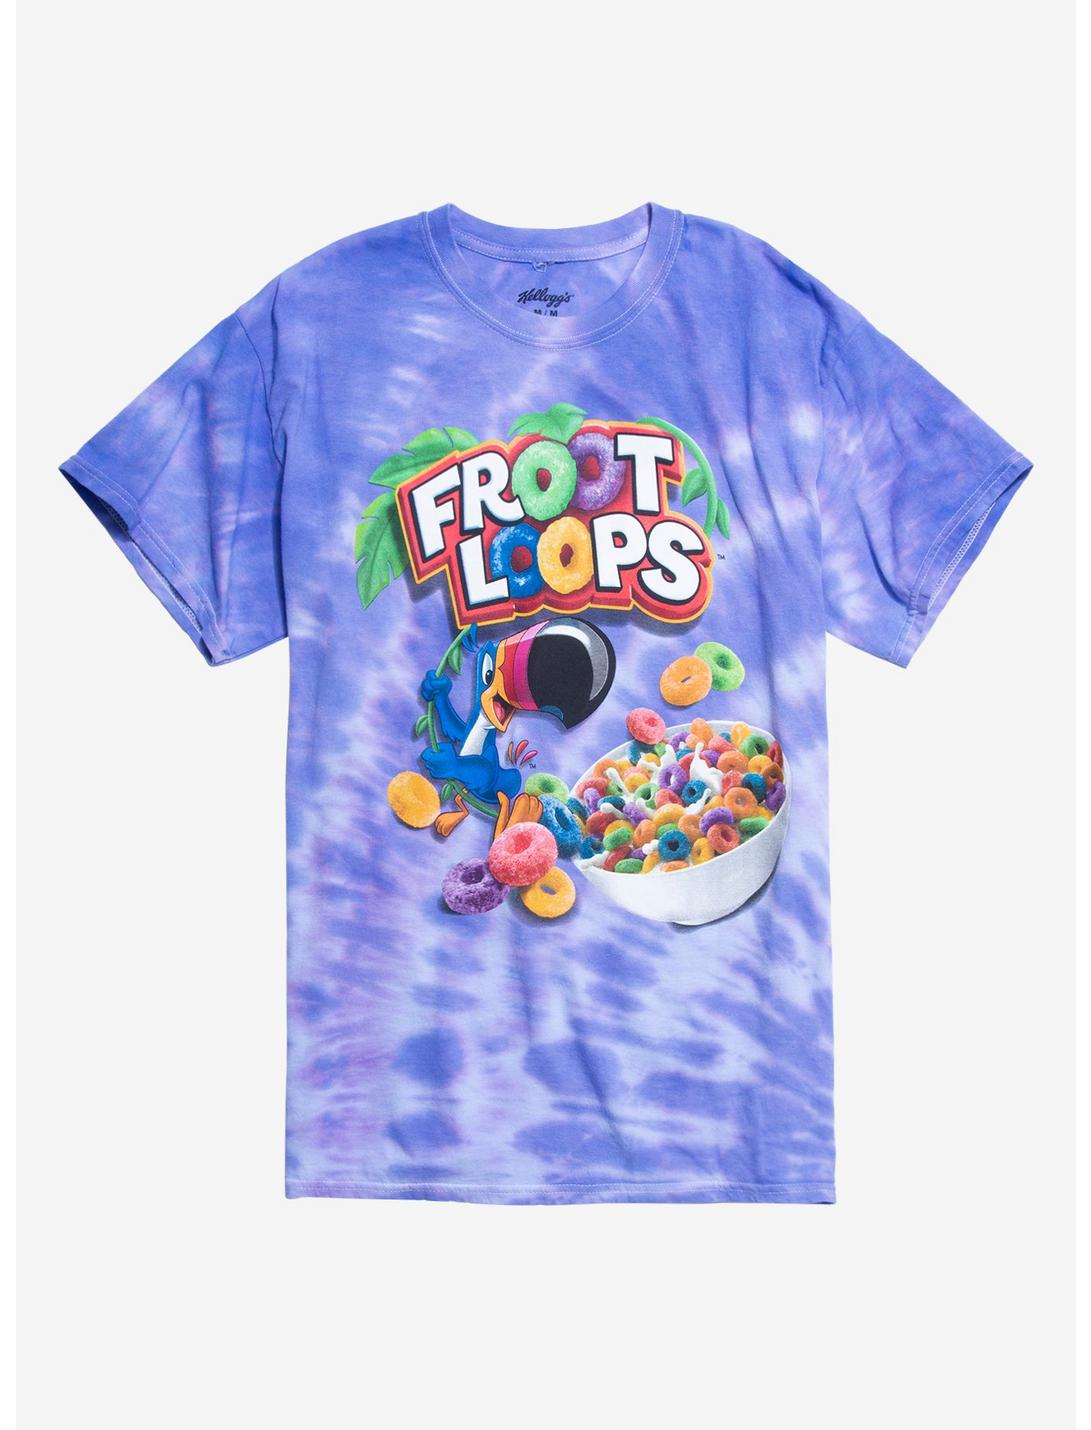 Froot Loops Tie-Dye Boyfriend Fit Girls T-Shirt, MULTI, hi-res